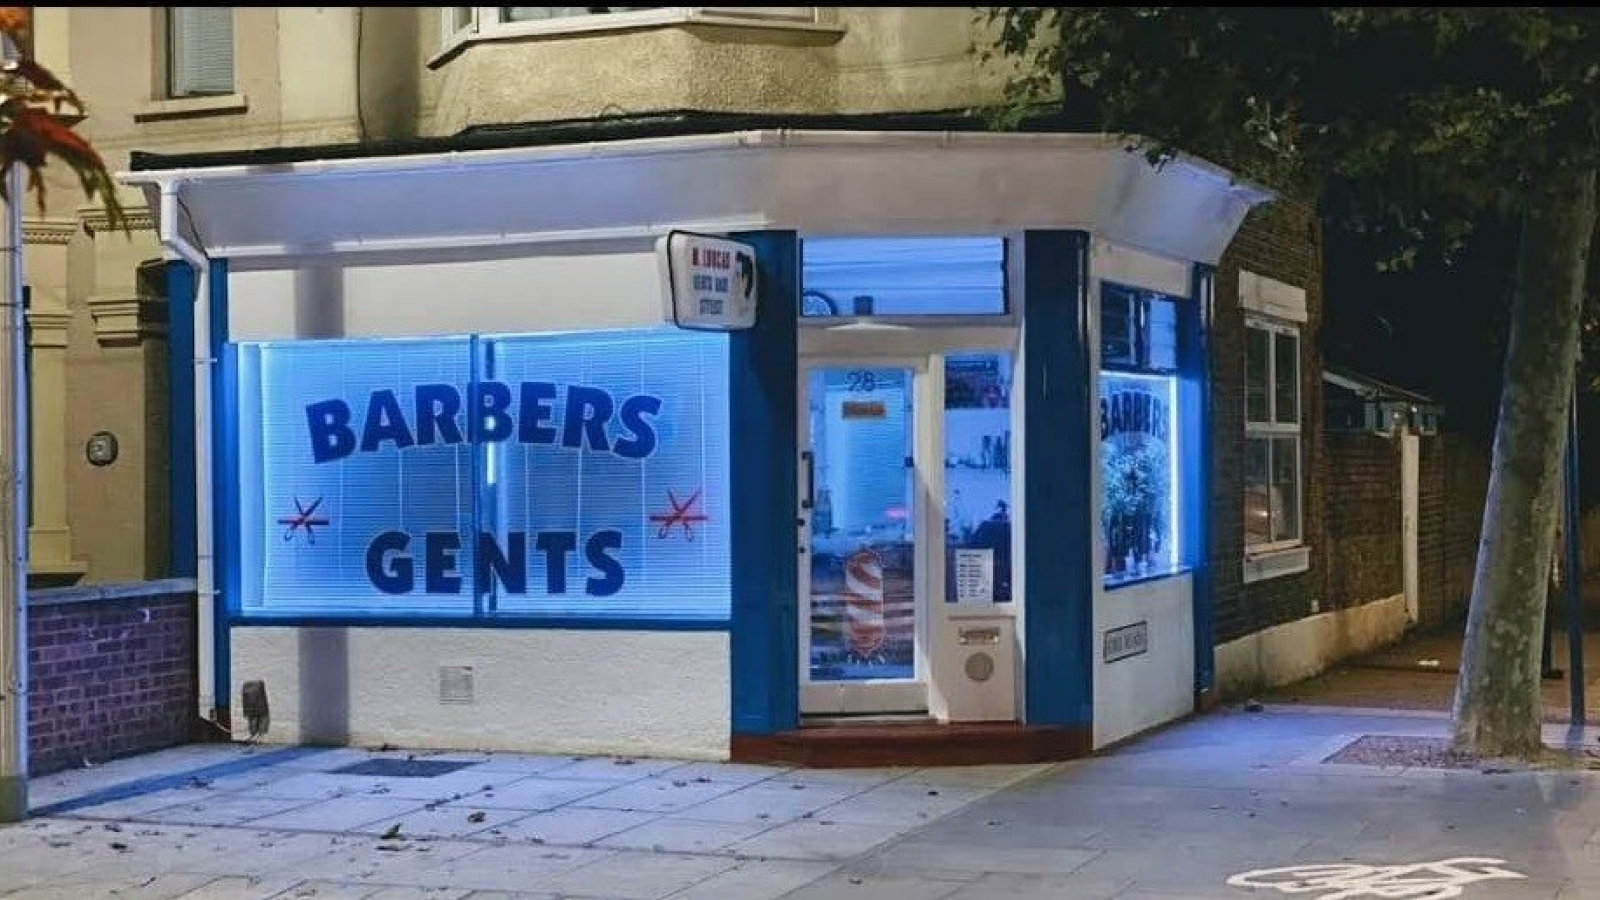 George's Barber Shop